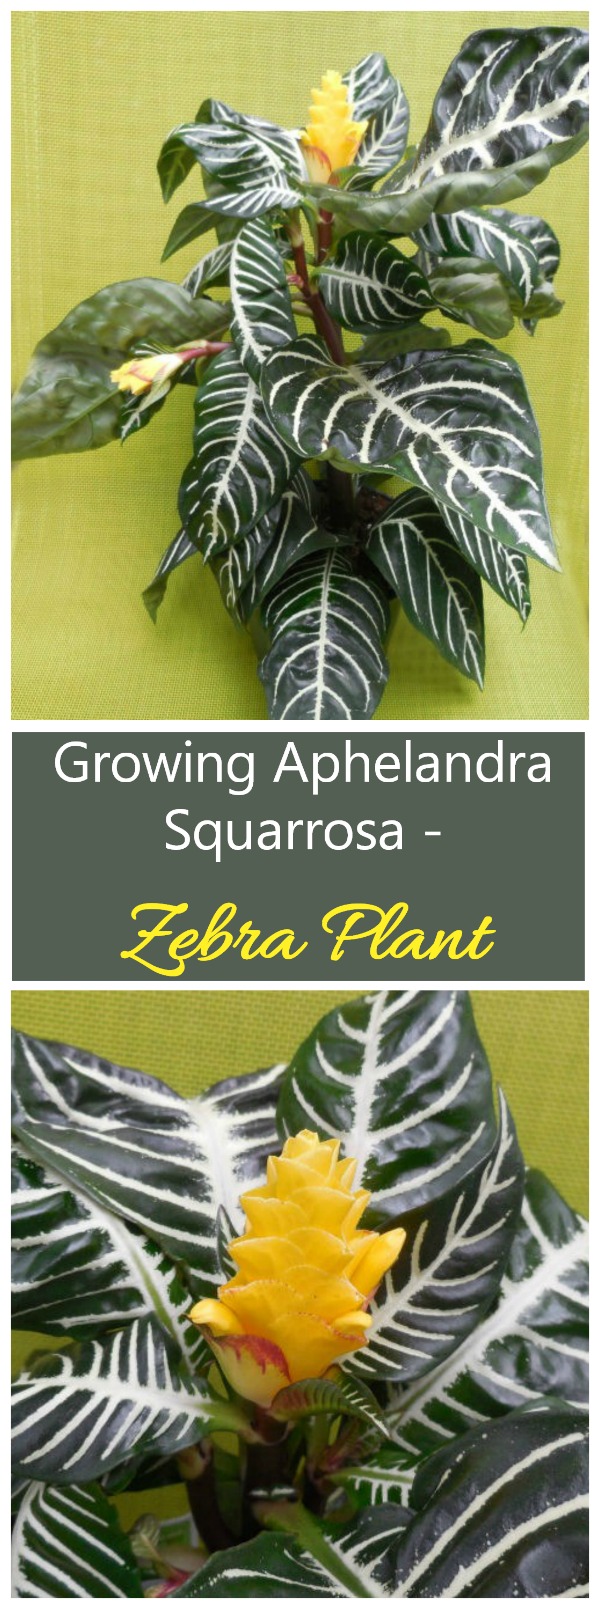 Zebraplant - Tips voor het kweken van Aphelandra Squarrosa